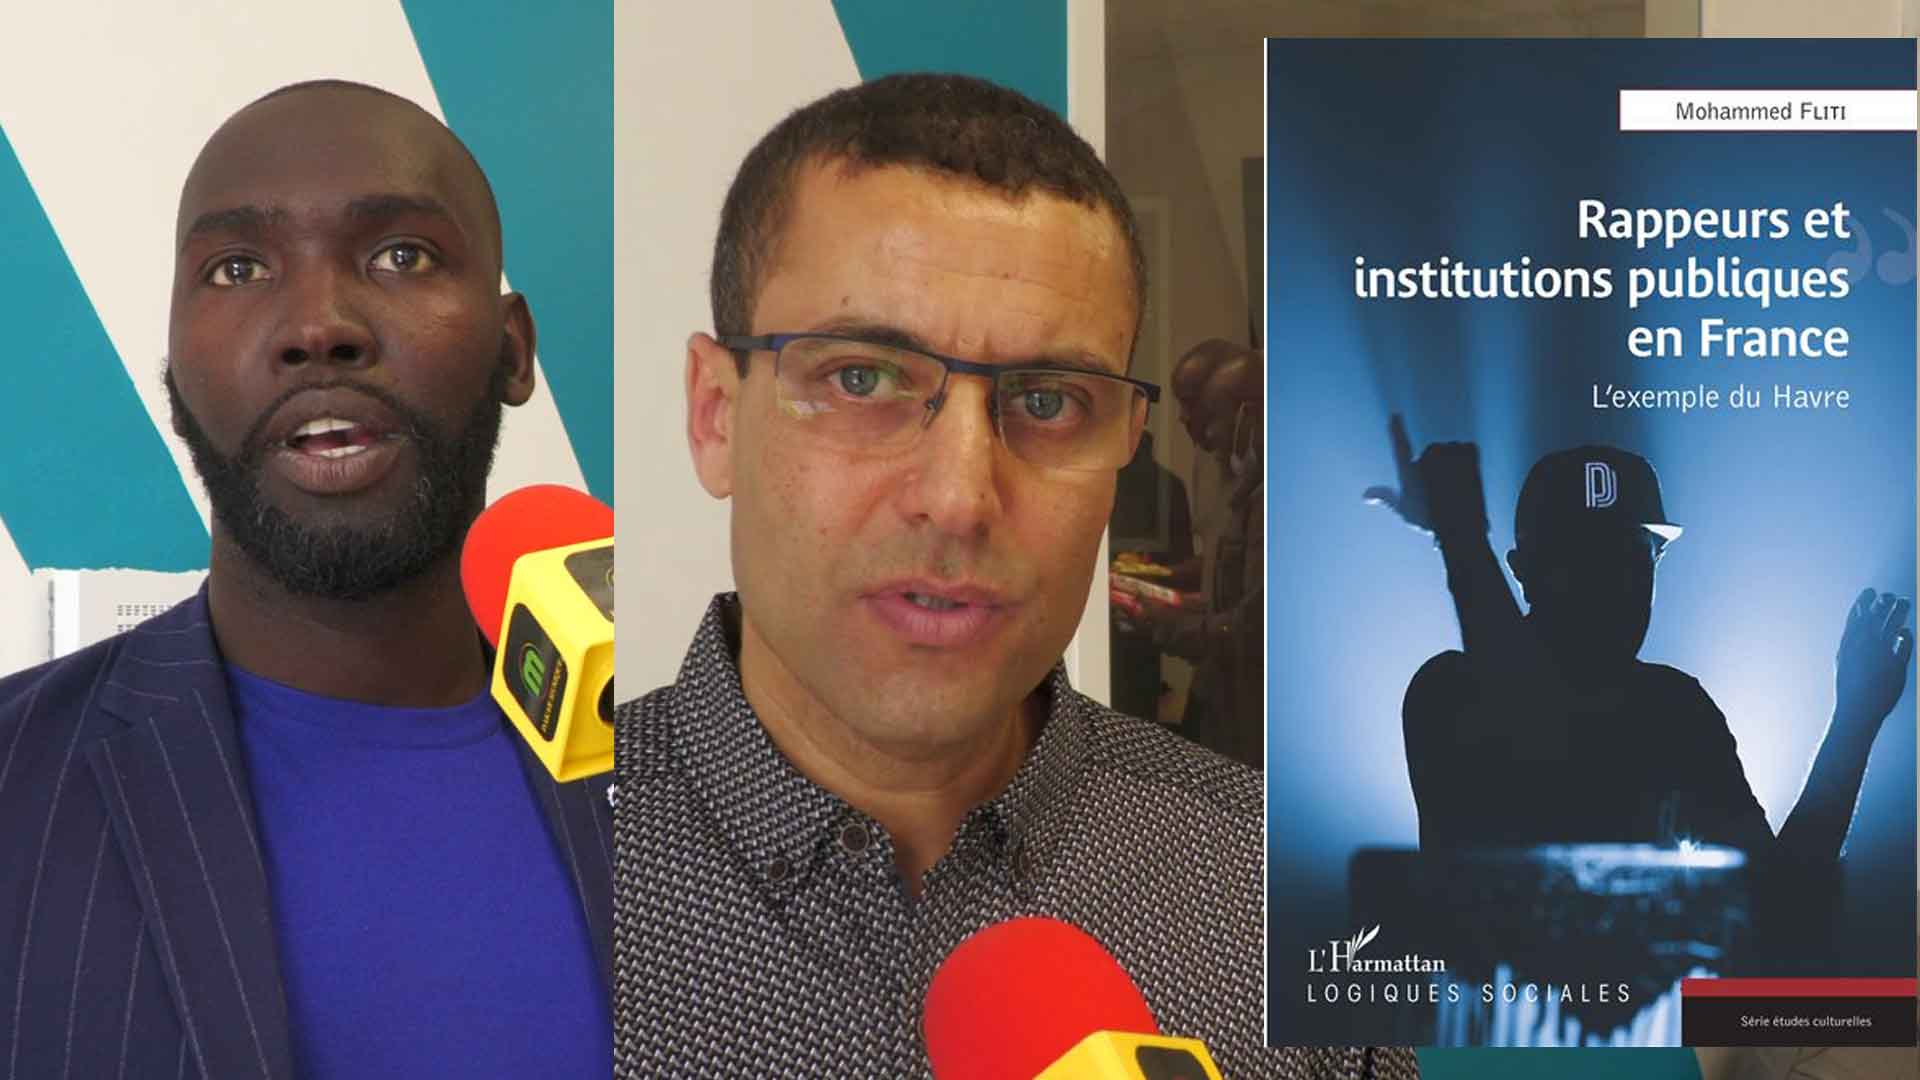 Présentation du livre "Rappeurs et institutions publiques en France" de Mohammed Fliti à l'espace WANT à Caucriauville au Havre.